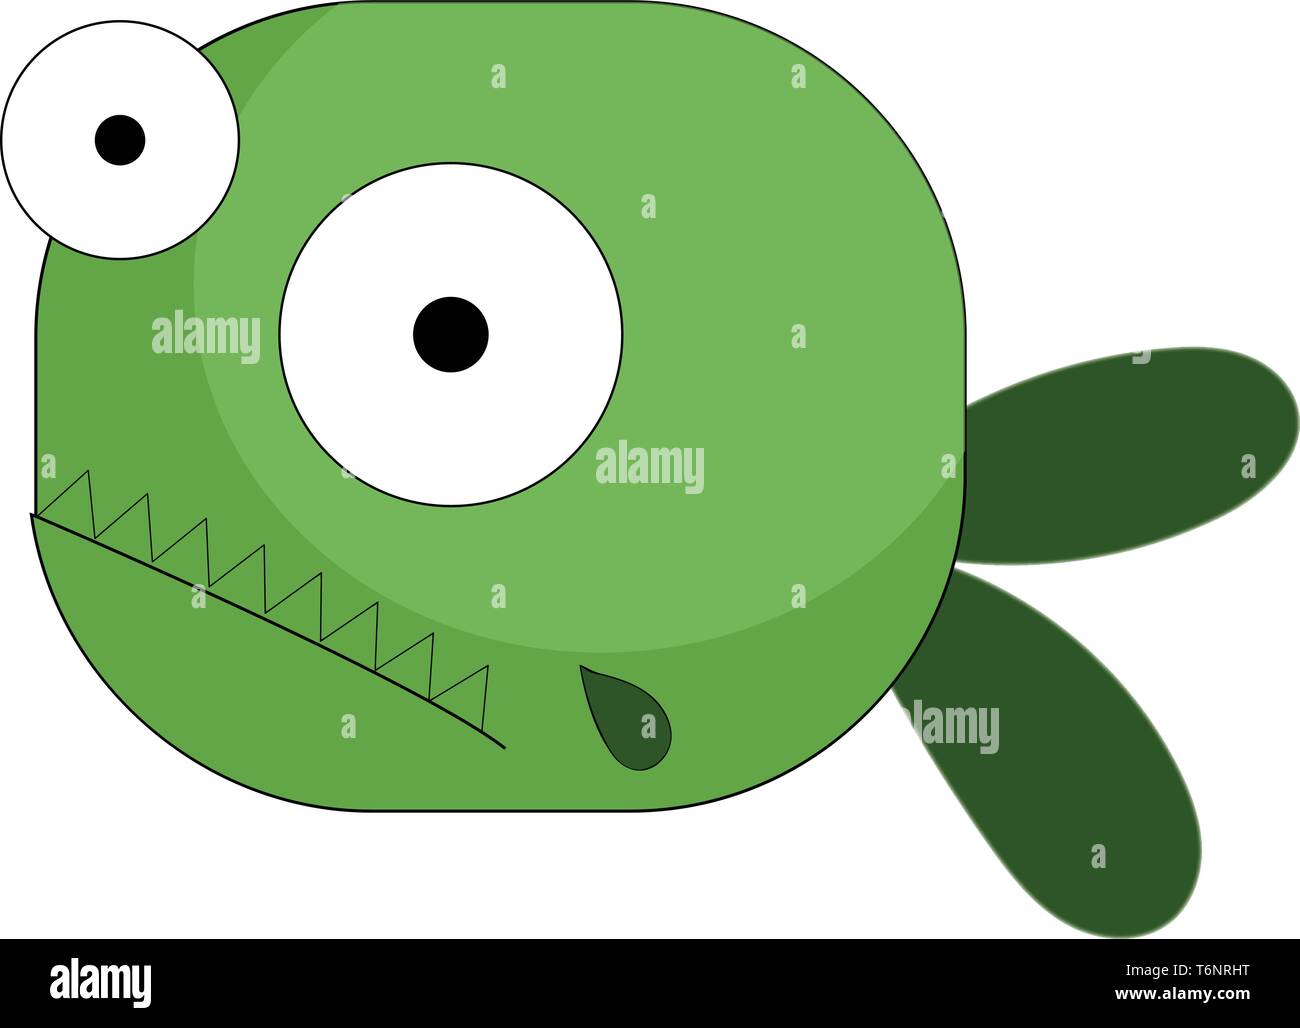 Dibujos animados peces verdes con dos ojos saltones cola bifurcada tiene picos como dientes de proyectar hacia afuera el color de dibujo o ilustración vectorial Ilustración del Vector